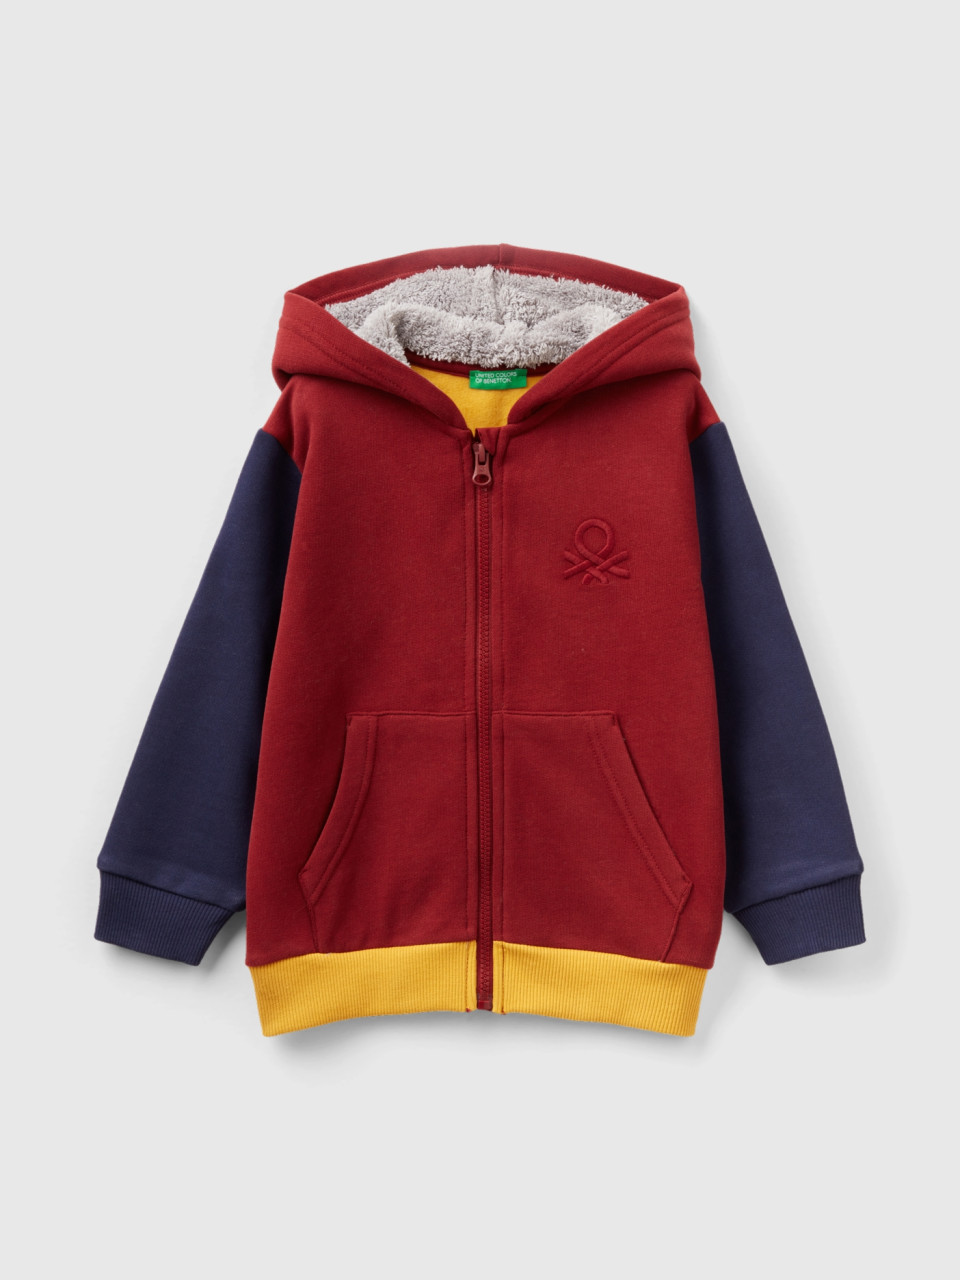 Benetton, Sweatshirt With Lined Hood, Multi-color, Kids